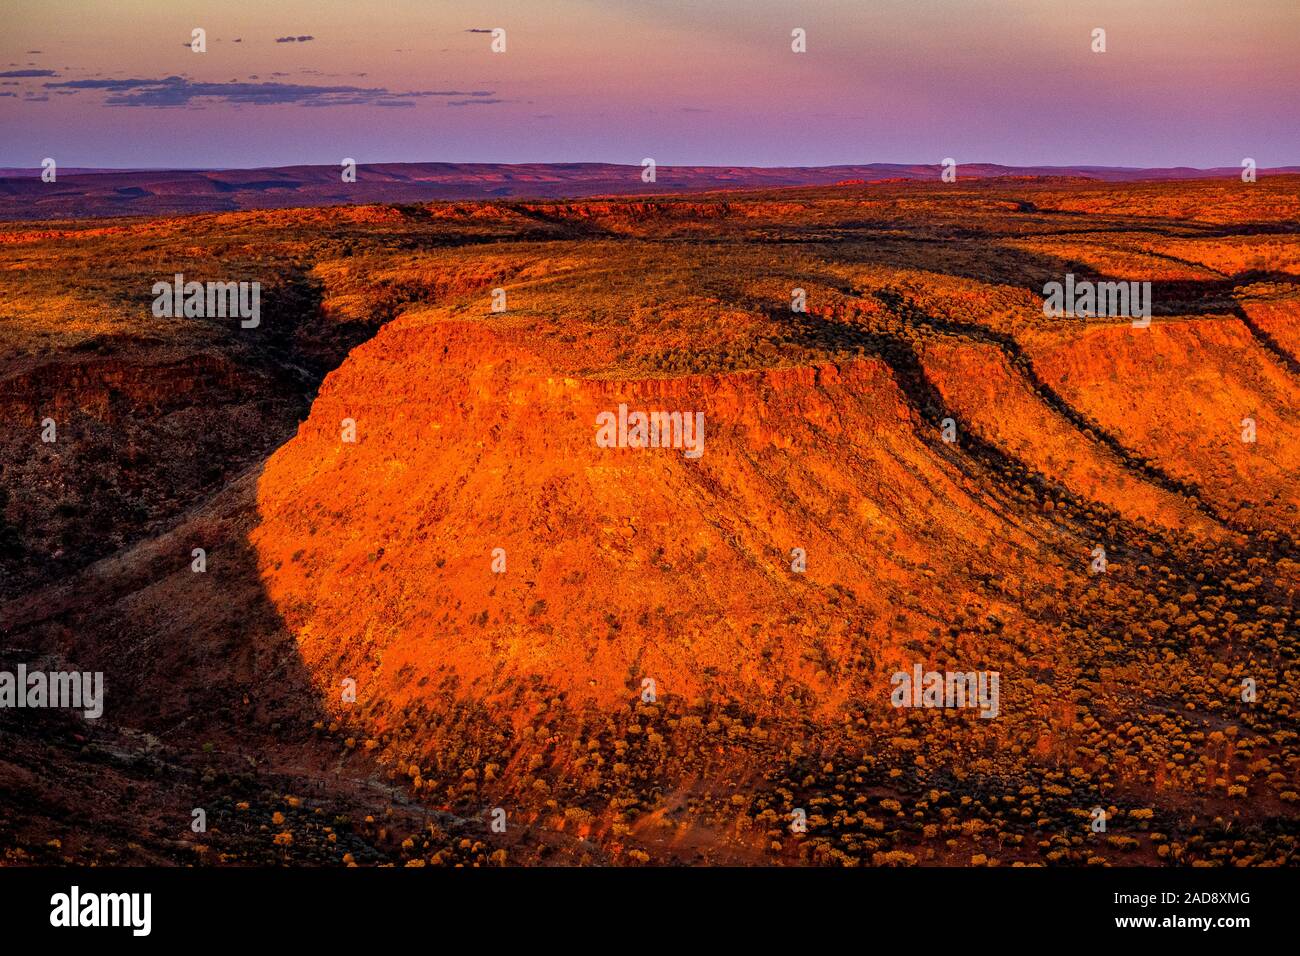 Sonnenuntergang in der entfernten australischen Outback. Ein Luftbild der George Gill Range in der Nähe von Kings Creek, Northern Territory, Australien. Stockfoto